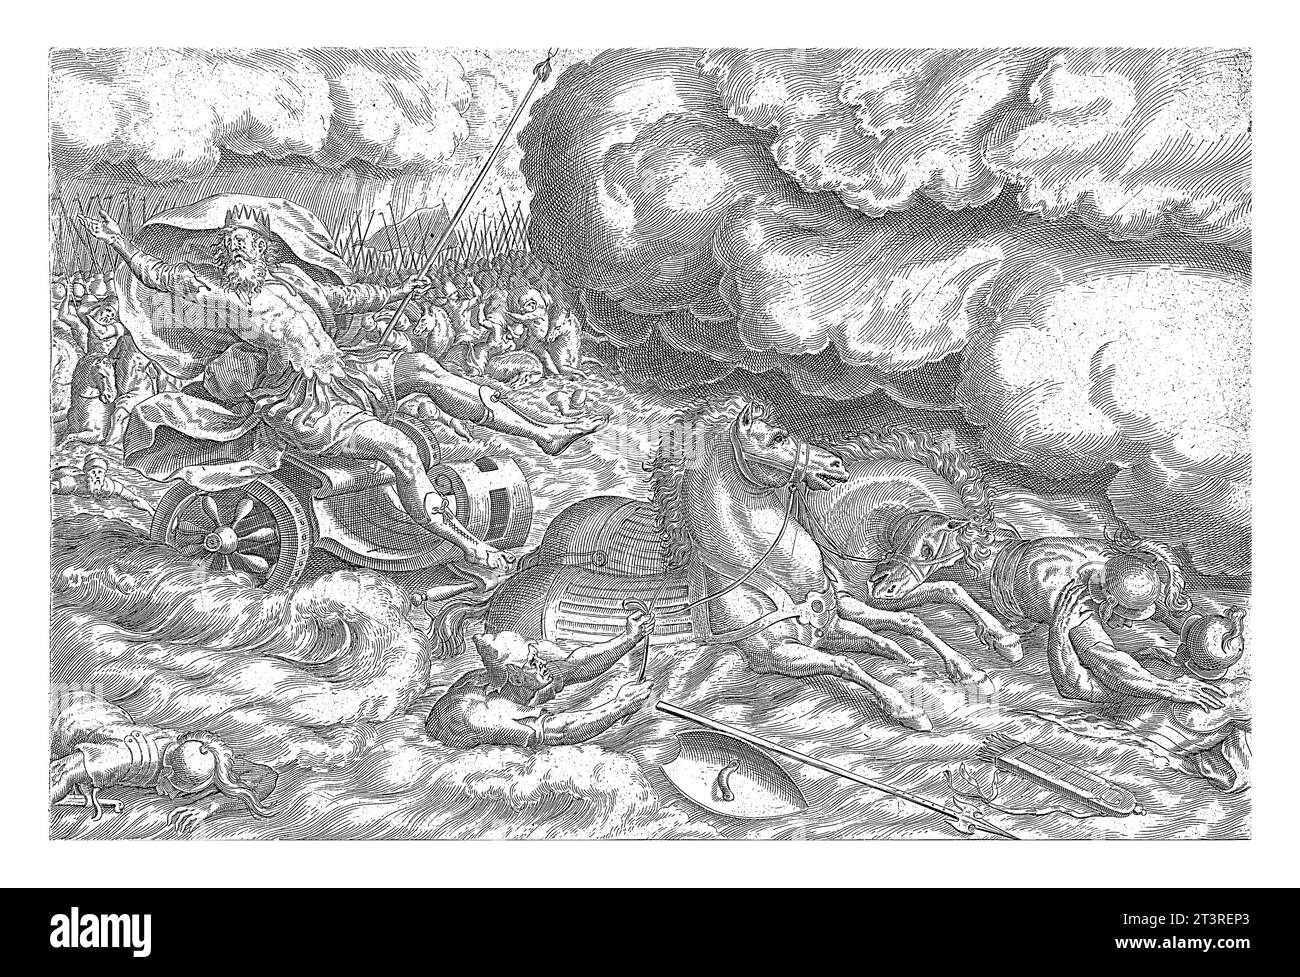 Destruction de l'armée égyptienne dans la mer Rouge, Johannes Wierix, après Marten van Cleve (I), 1639 tandis que l'armée égyptienne traverse la mer Rouge, Moïse Banque D'Images